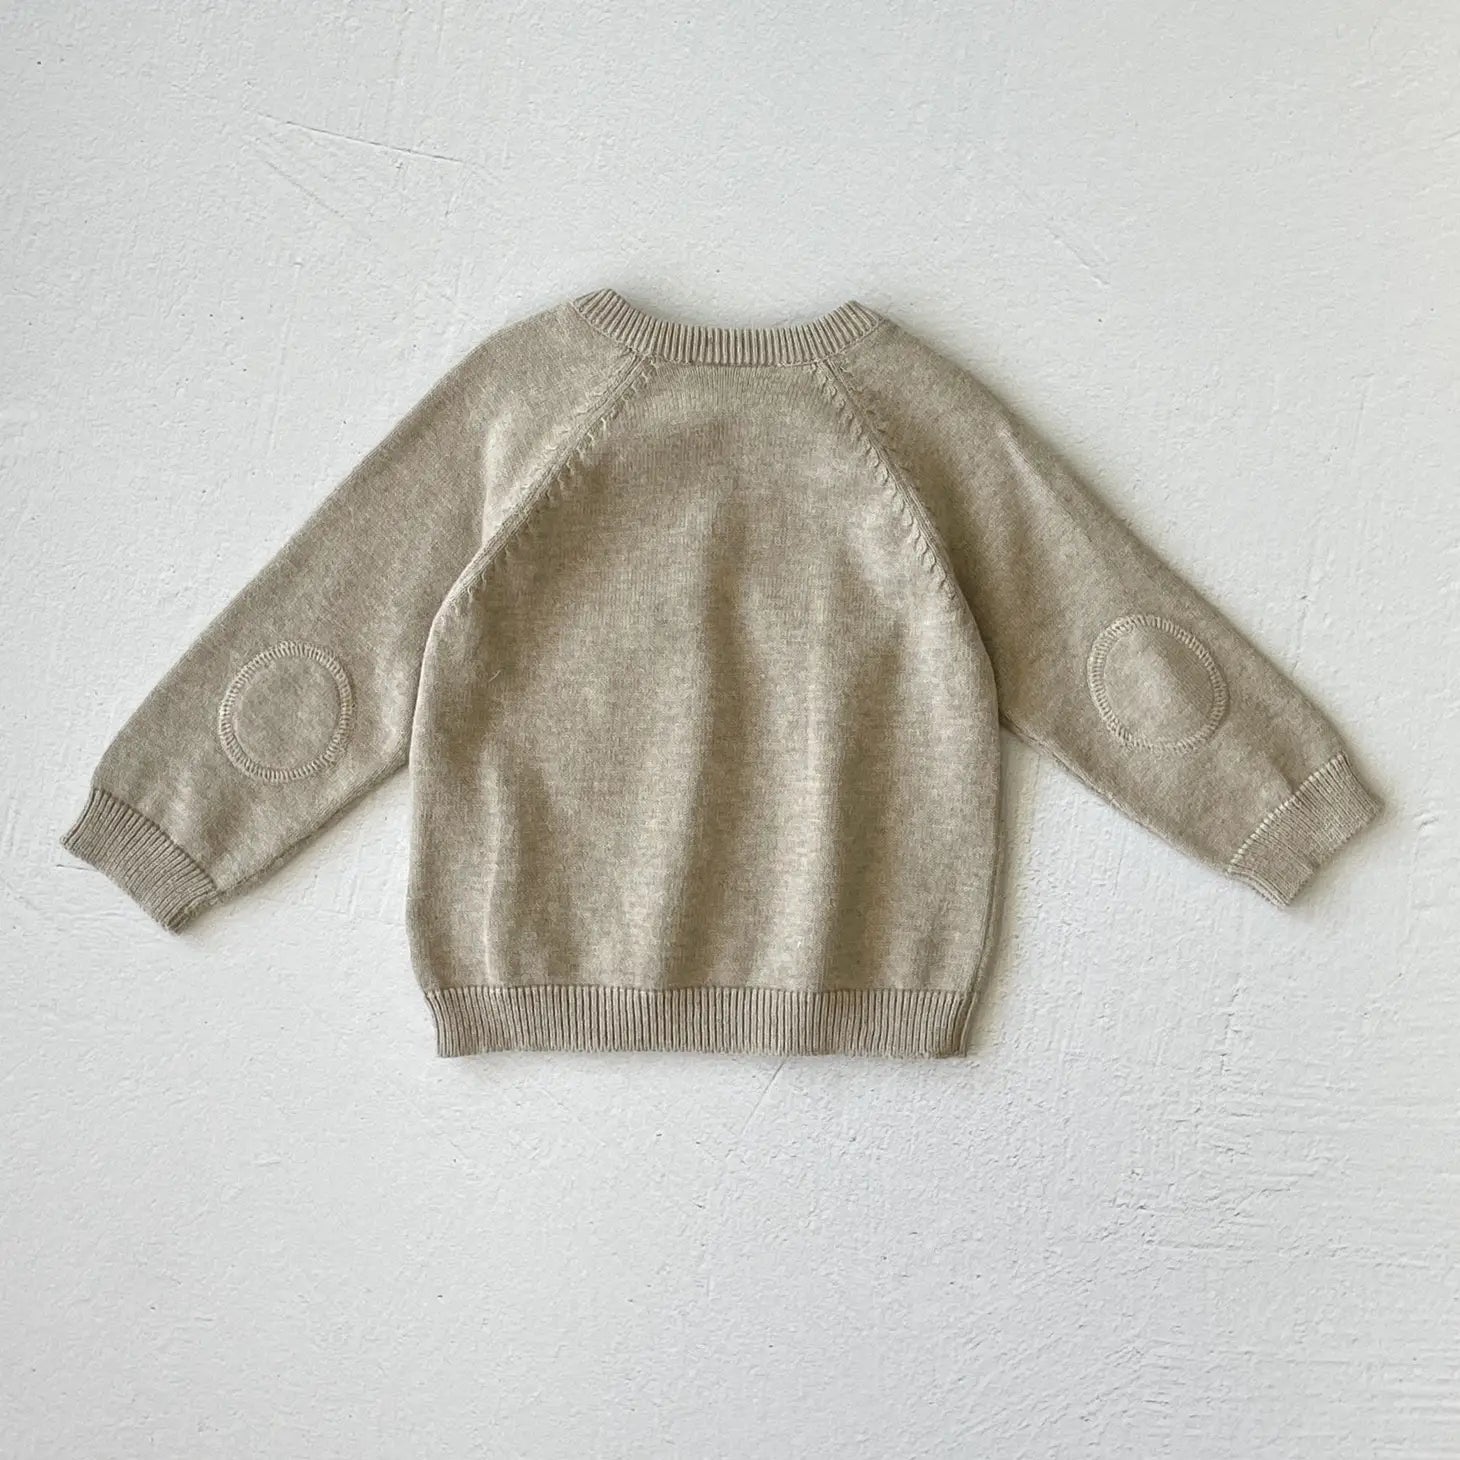 Milan Baby Raglan Knit Pullover Sweater